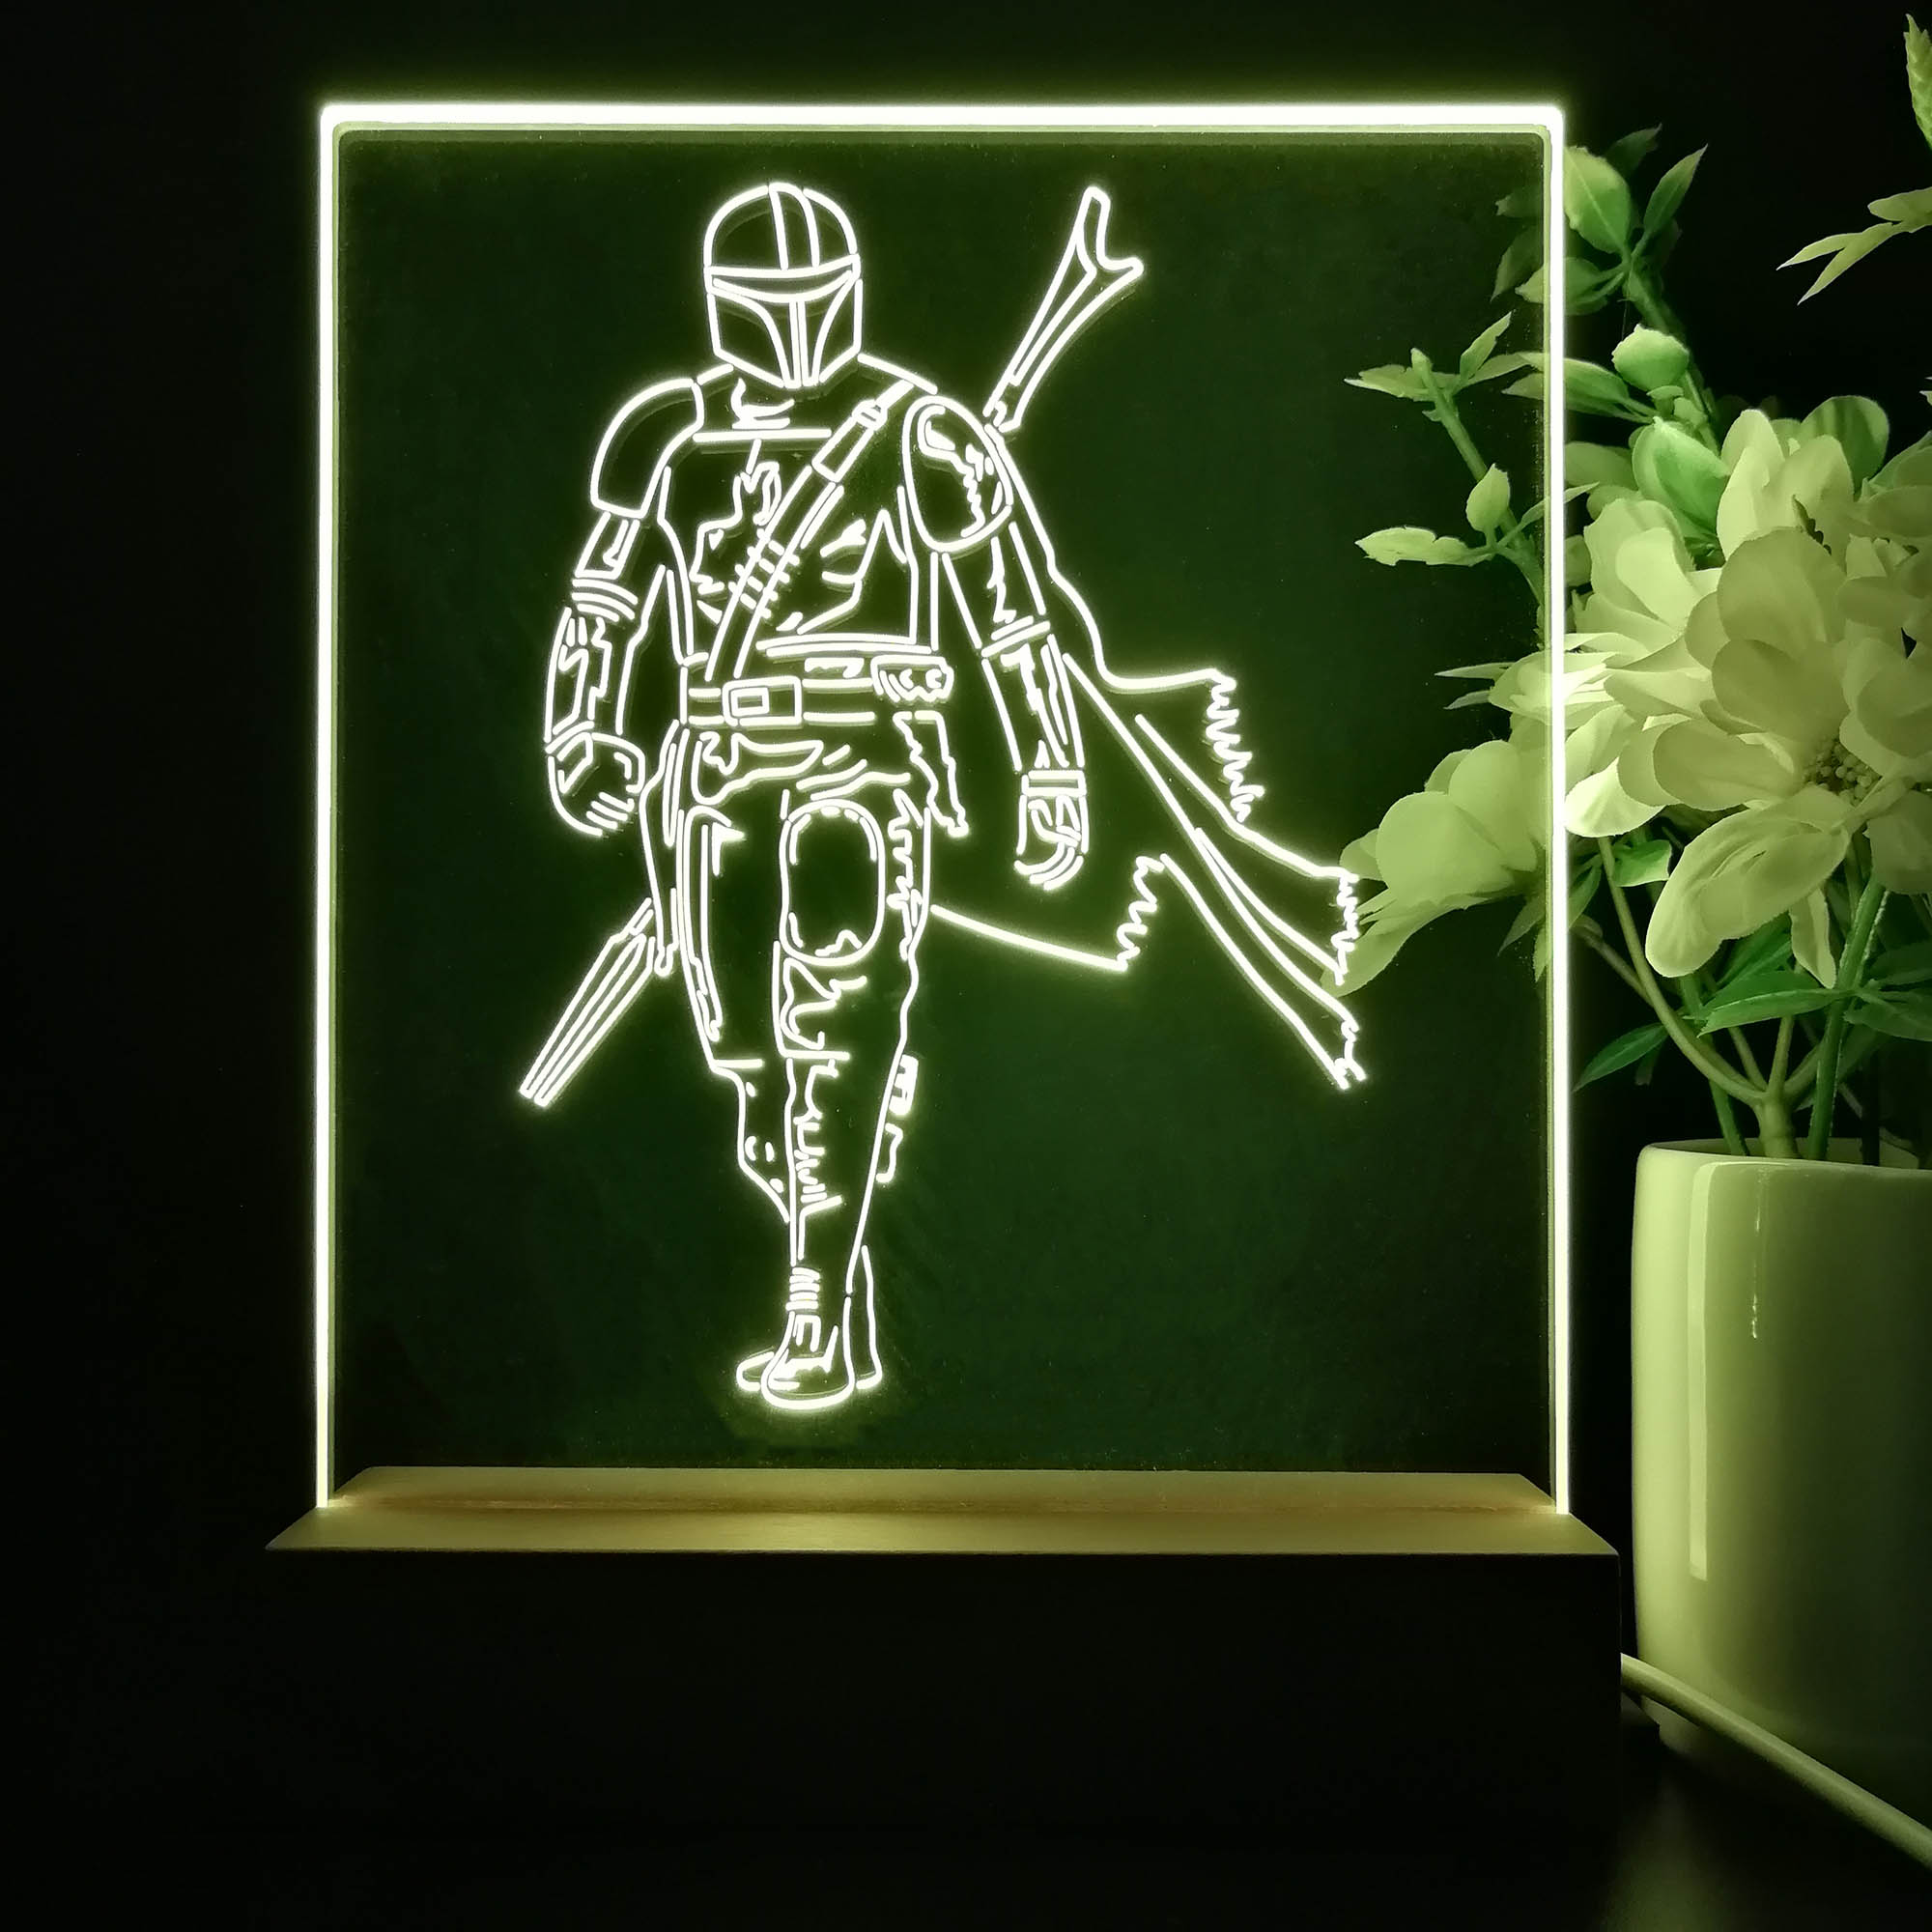 Mandalorian Star Wars Game Room LED Sign Lamp Display